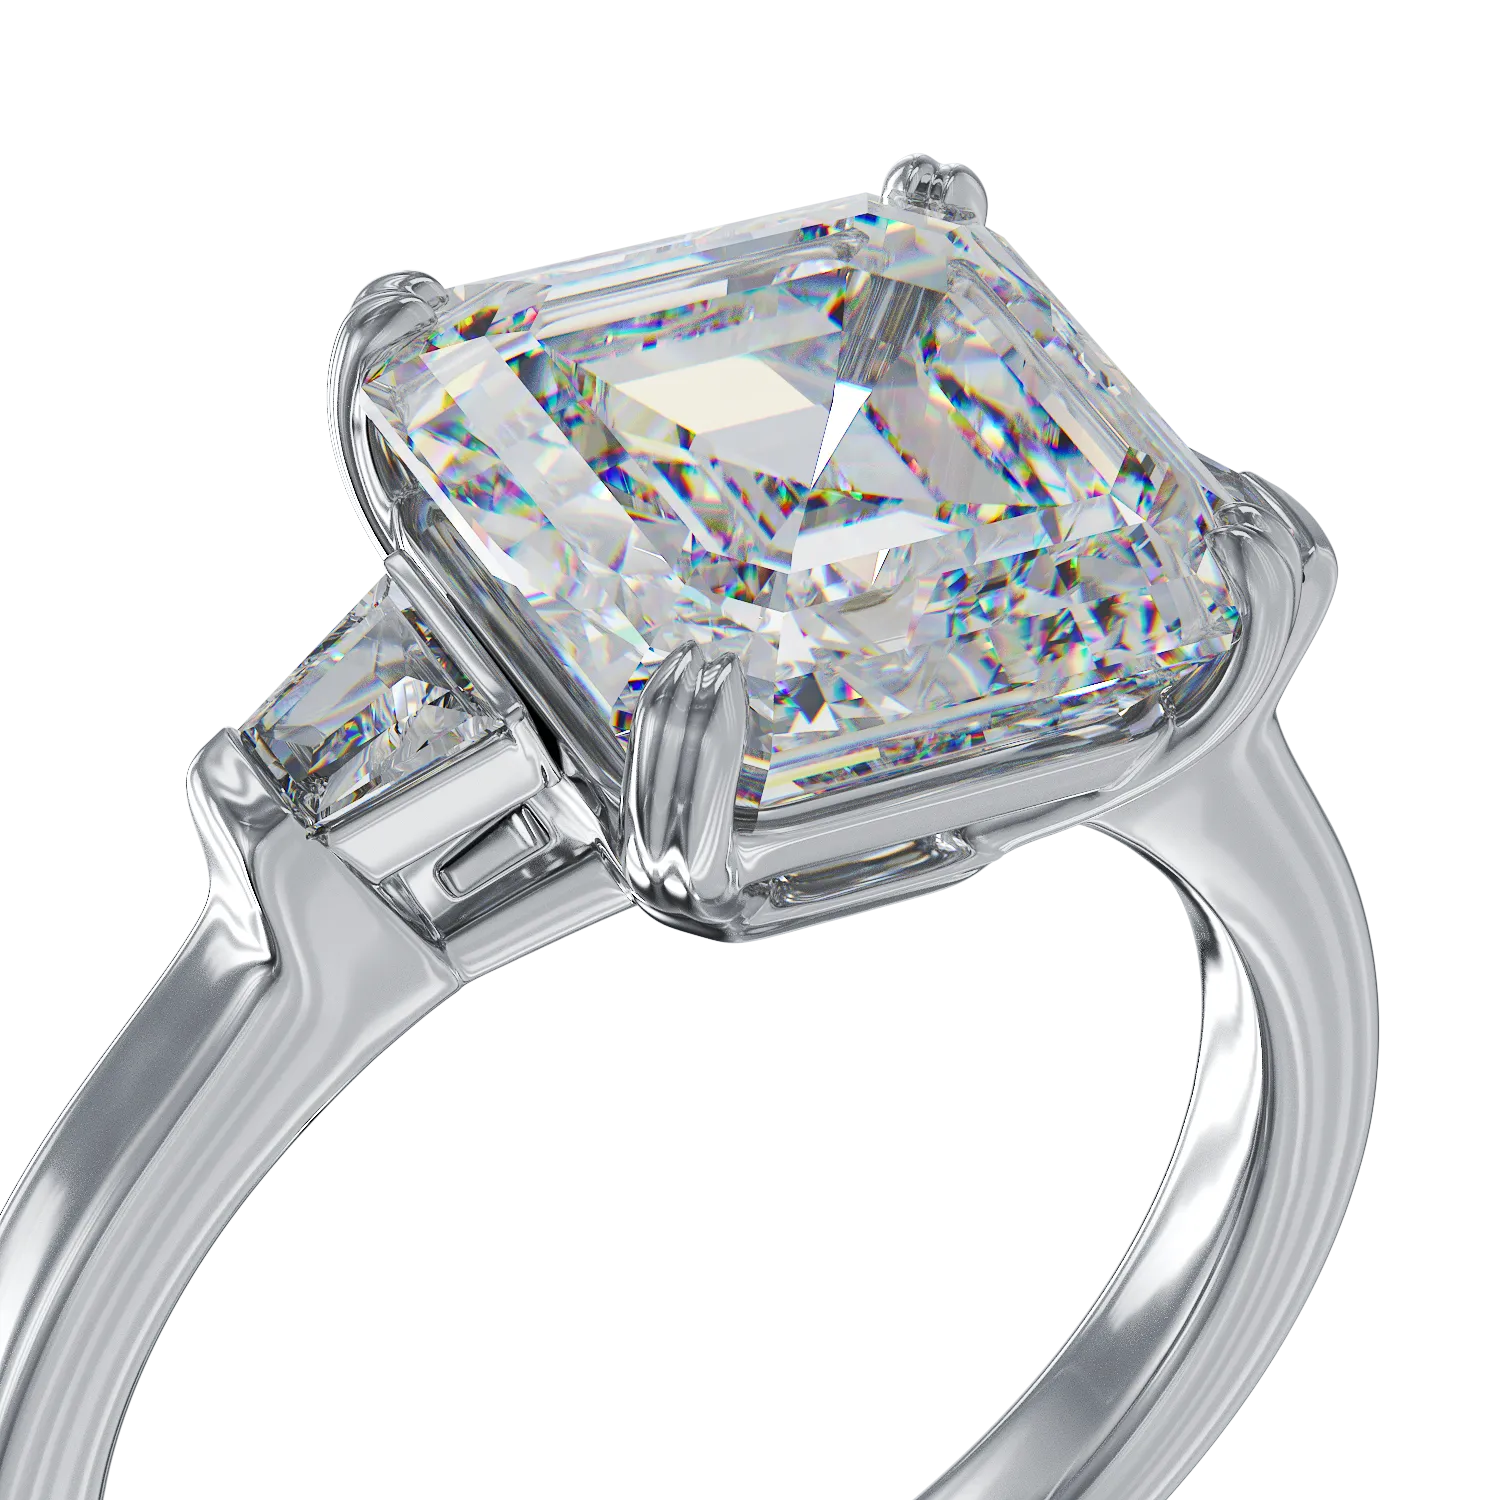 18K fehérarany gyűrű 3.19ct gyémántokkal